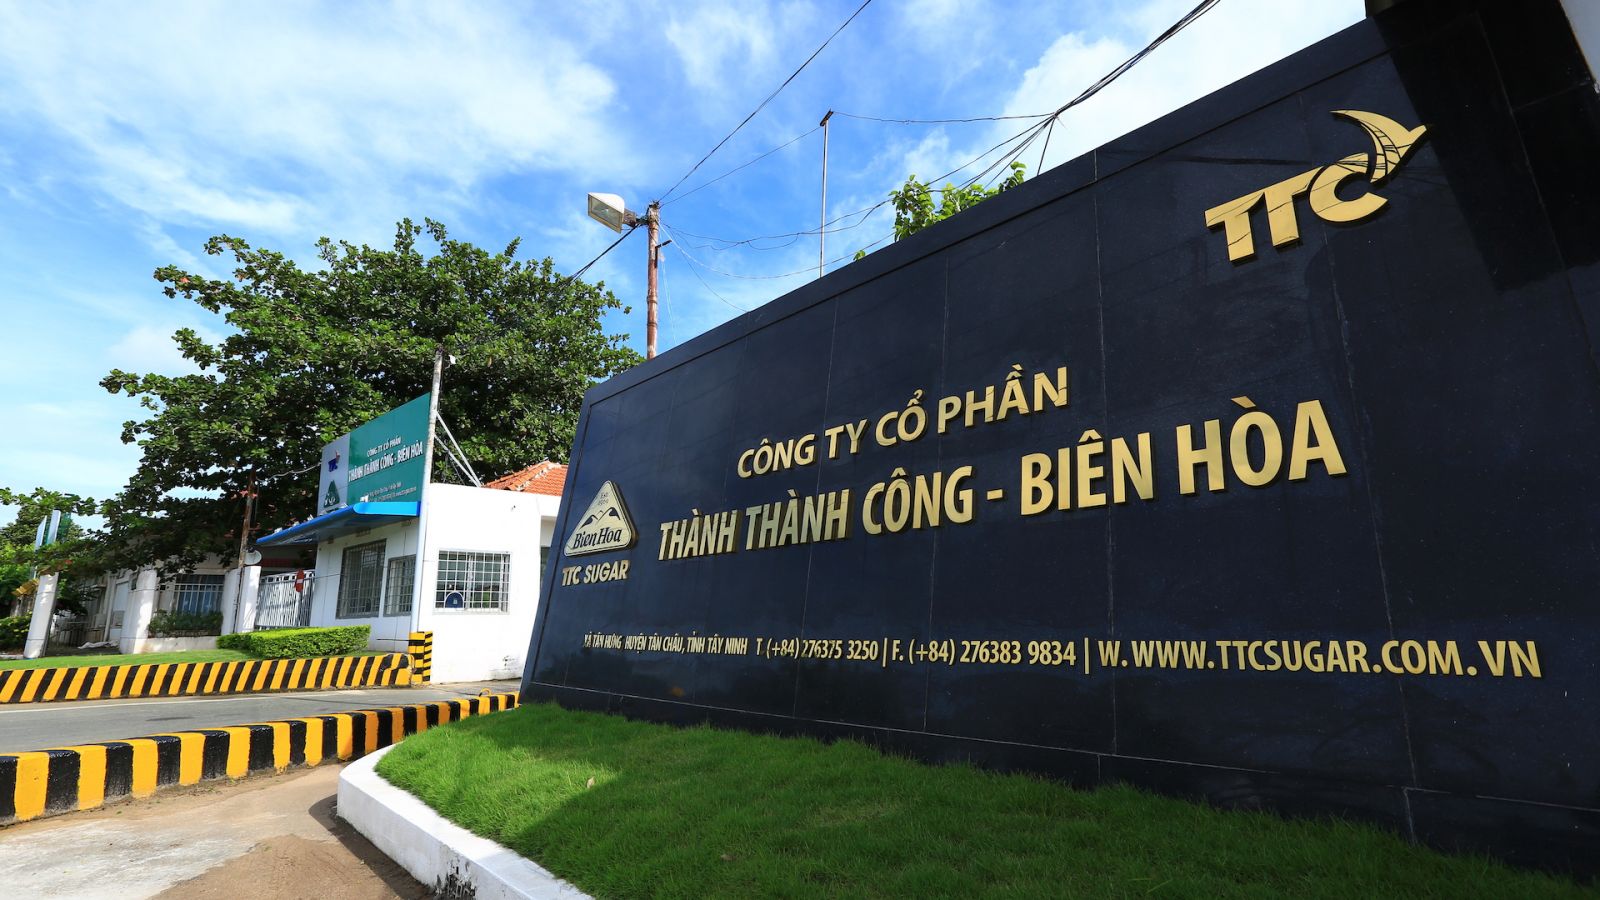 Lãi trước thuế niên độ của Thành Thành Công - Biên Hòa dự báo giảm 4%